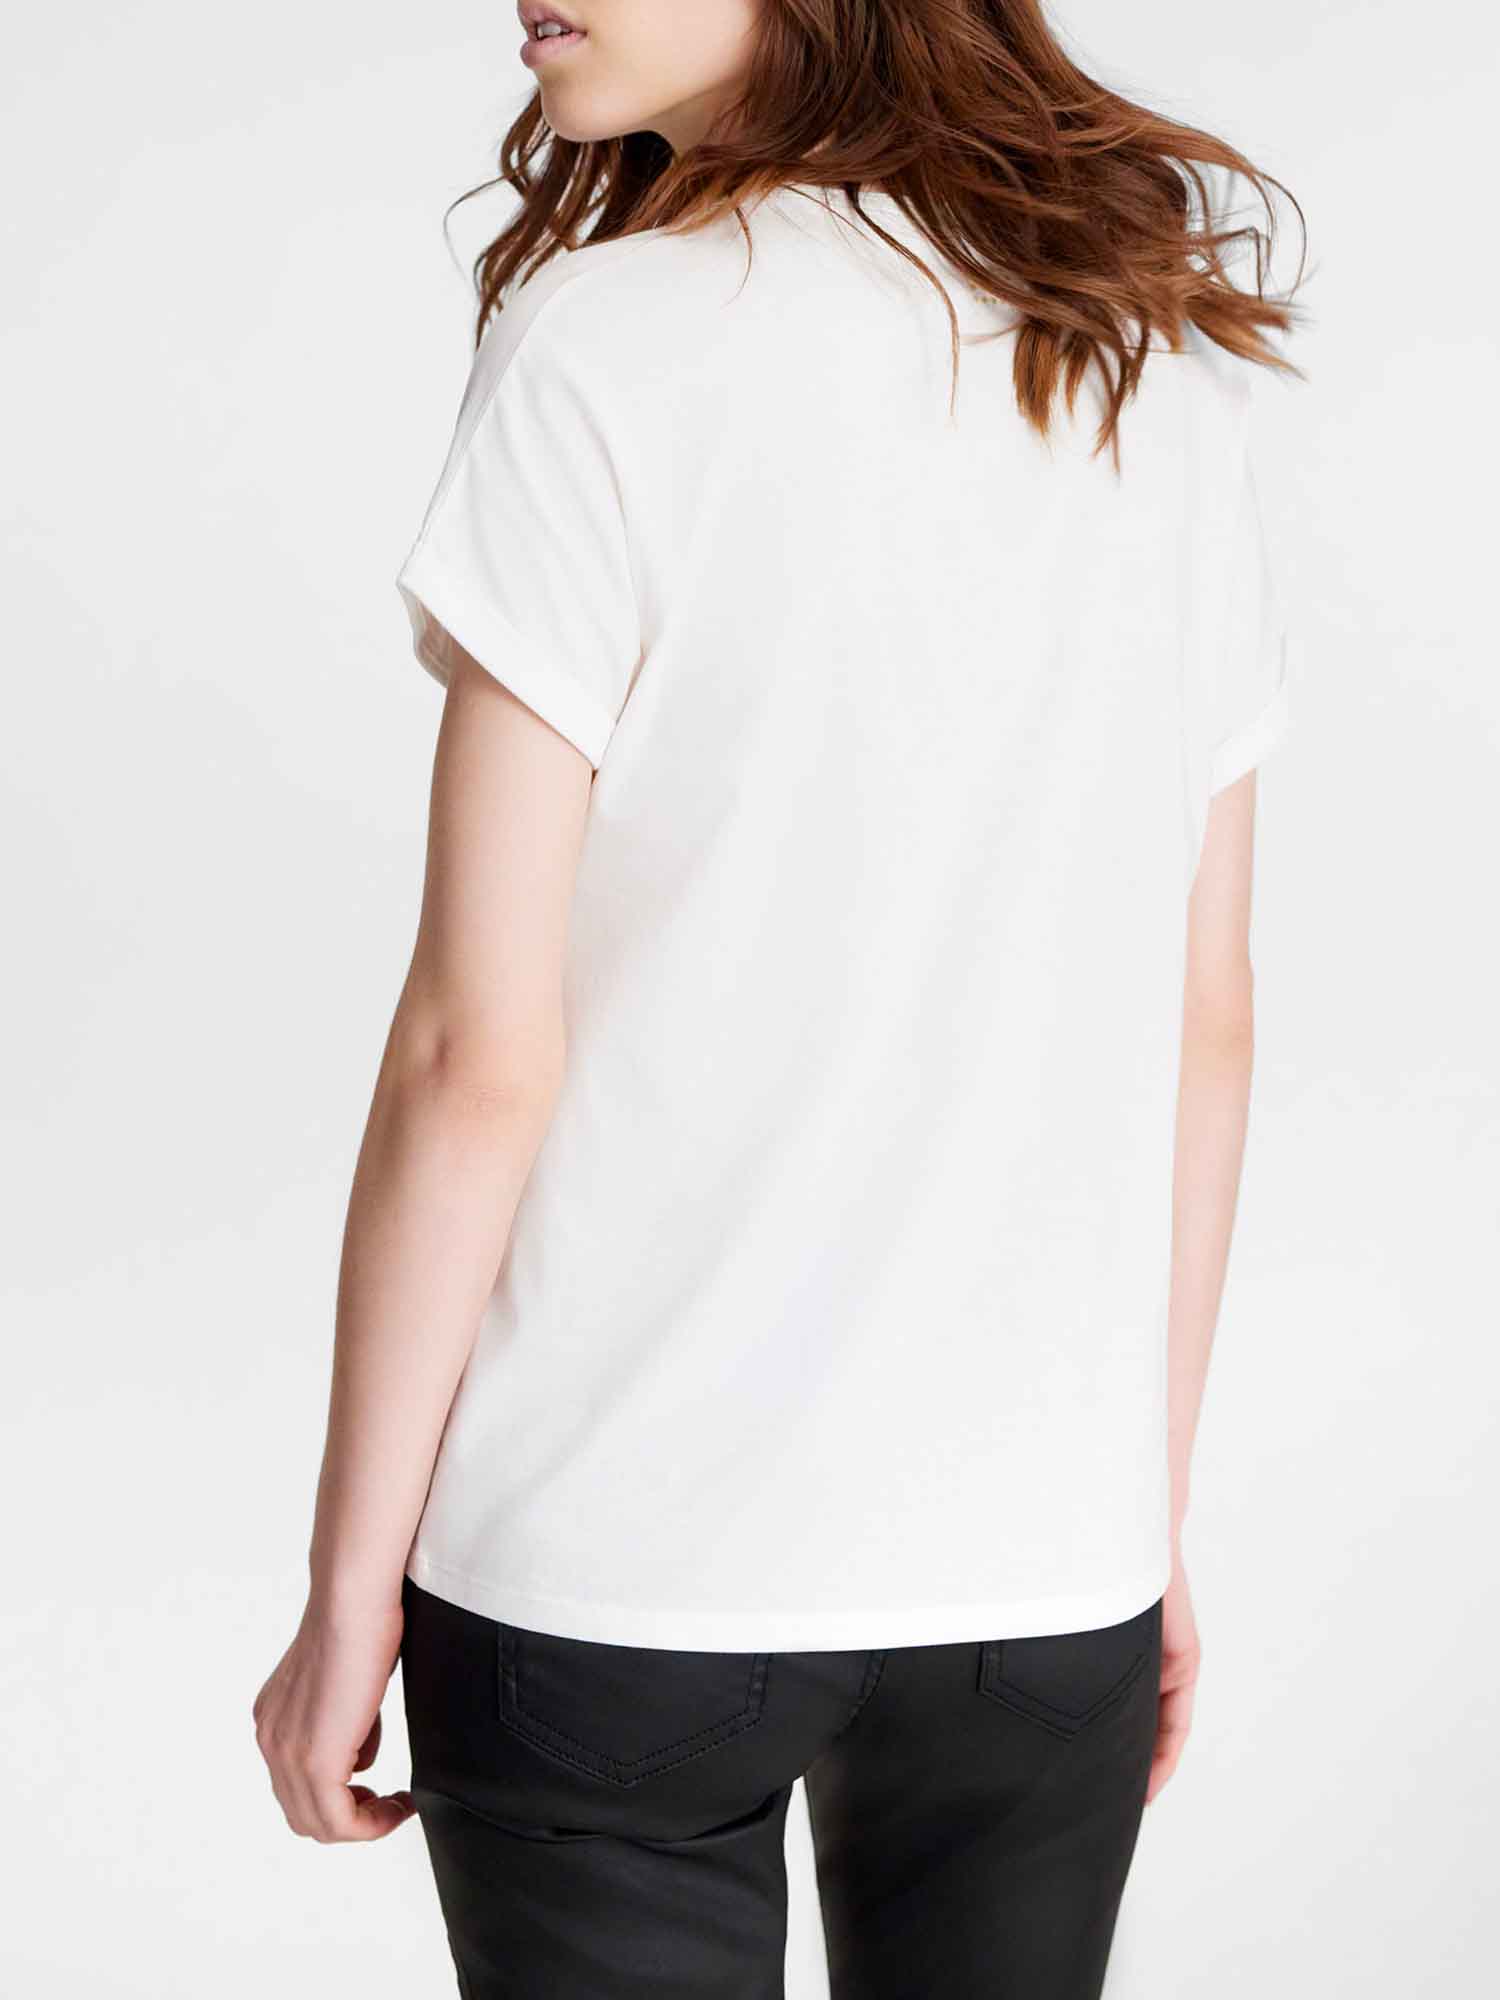 Tee Shirt Femme Print Exclusif Coton Biologique Arctique